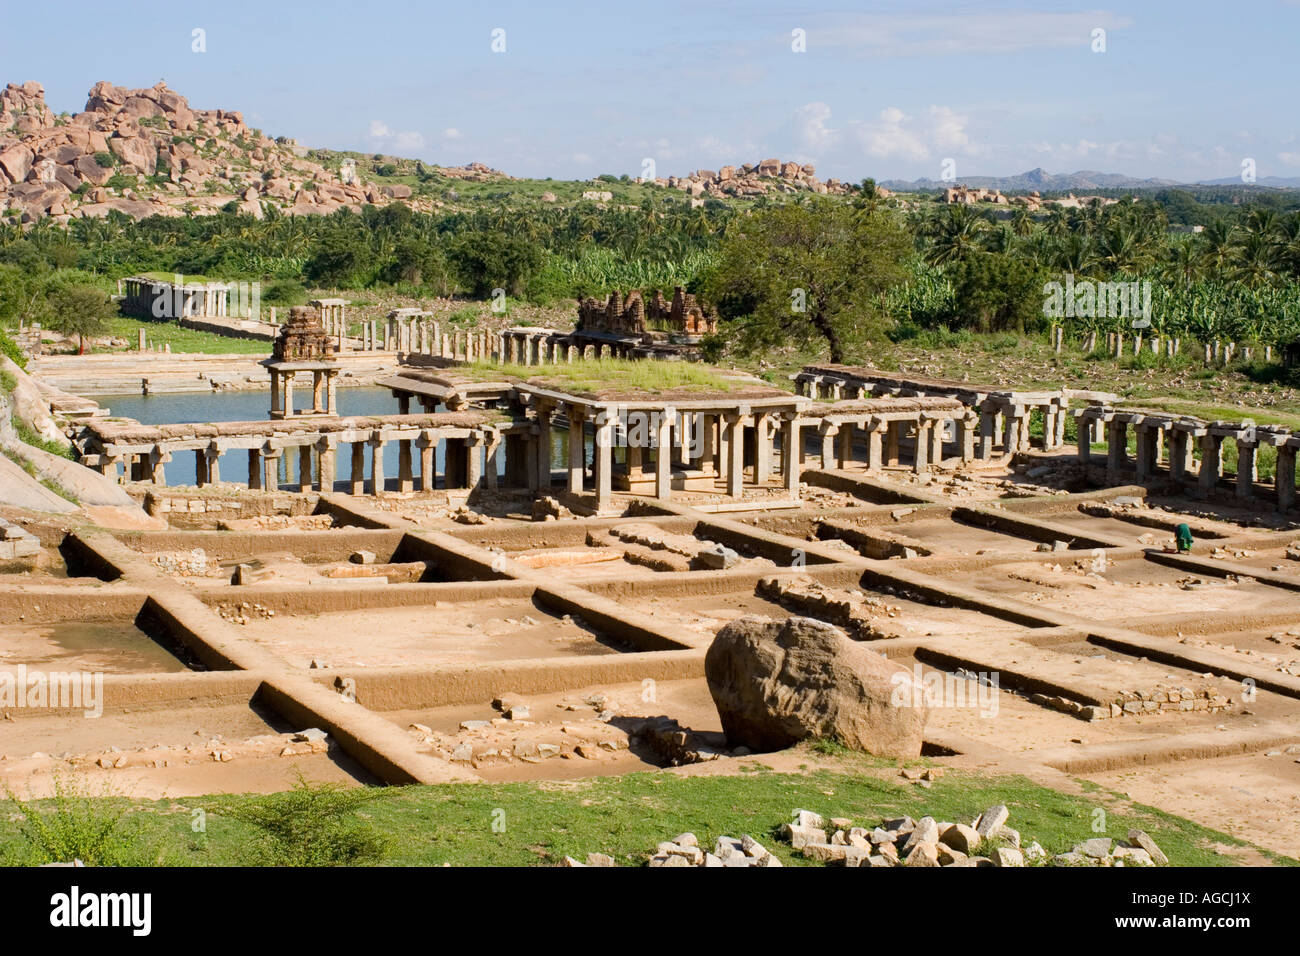 Ruinen des Krishna Basars in Hampi Indien Lage von einer archäologischen Ausgrabung Stockfoto